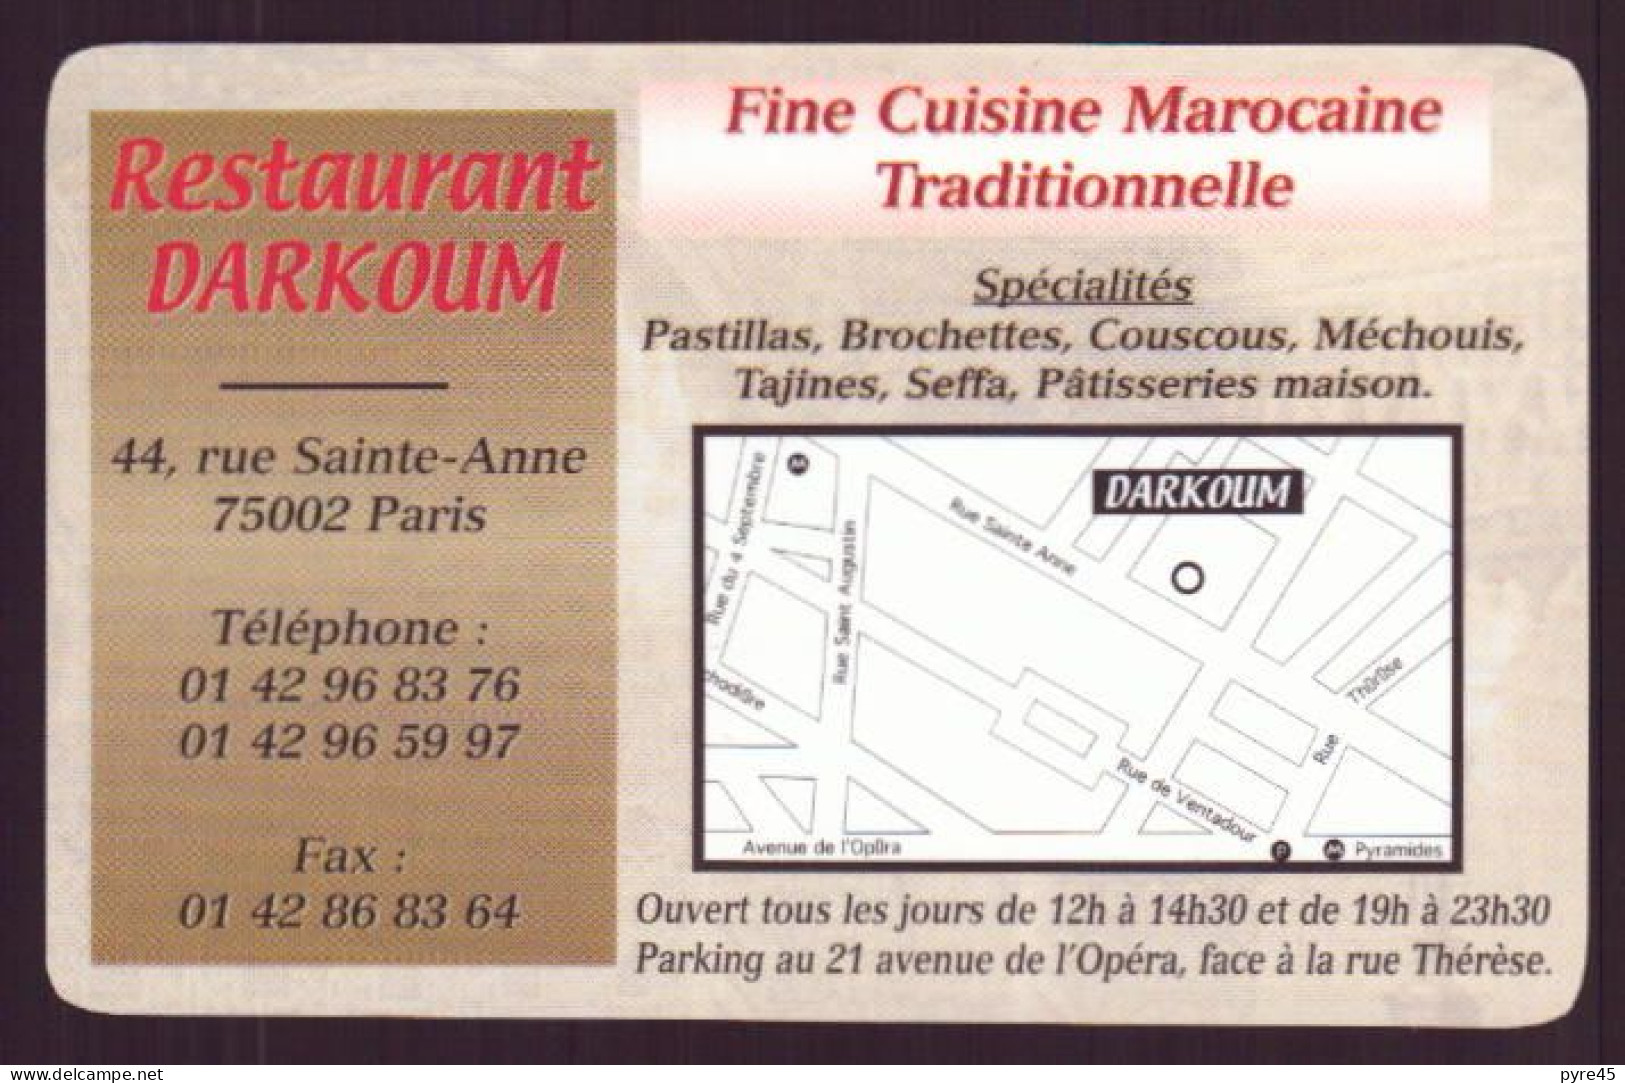 CARTE PUBLICITAIRE RESTAURANT DARKOUM CUISINE MAROCAINE TRADITIONNELLE A PARIS - Cartes De Visite